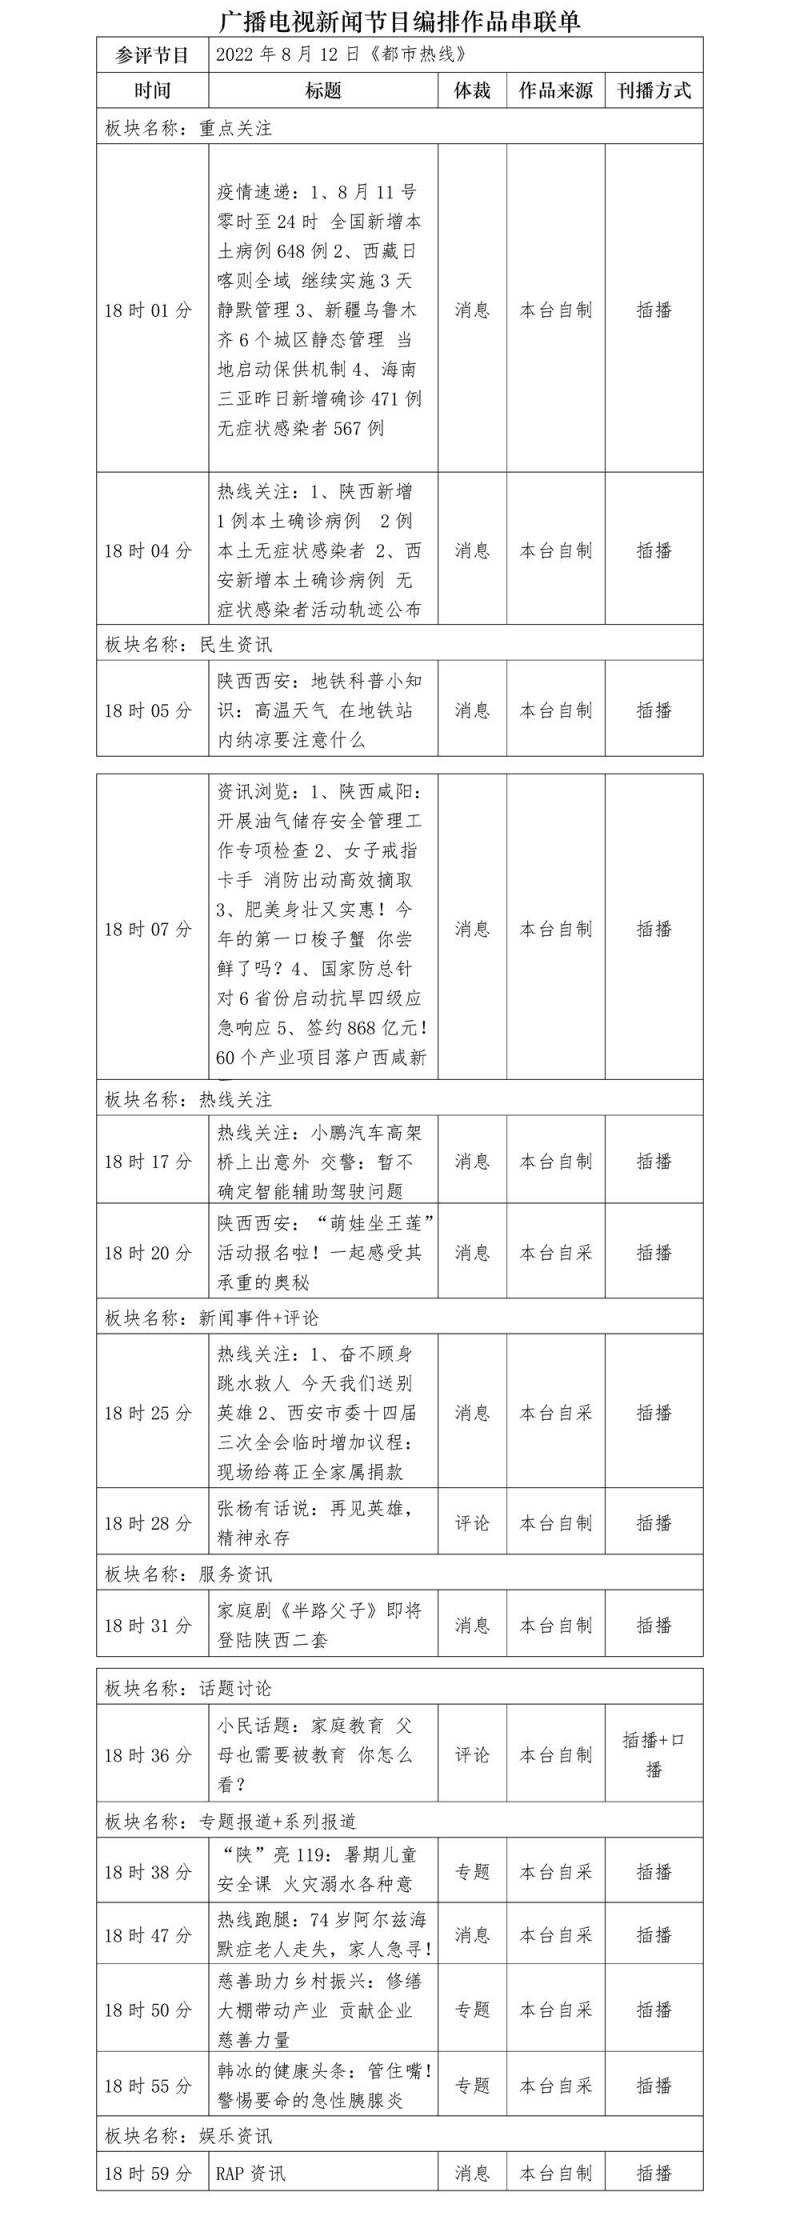 陝西都市熱線的微博發佈，第33屆中國新聞獎蓡評作品公示補充內容